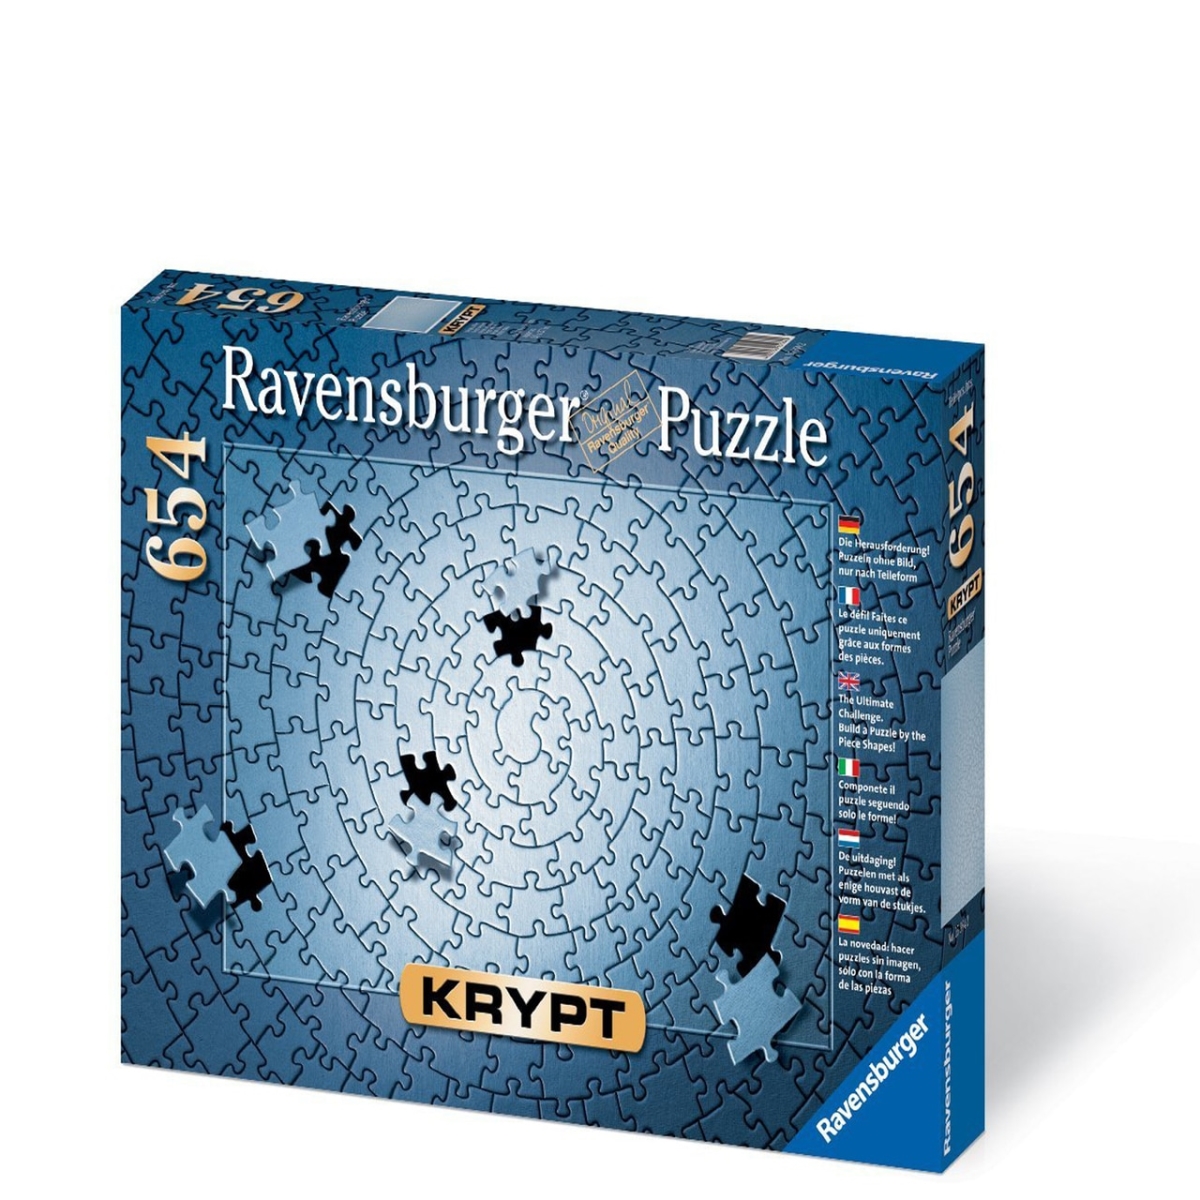 30363685 Krypt Silver Blank Puzzle Challenge - 654 Piece